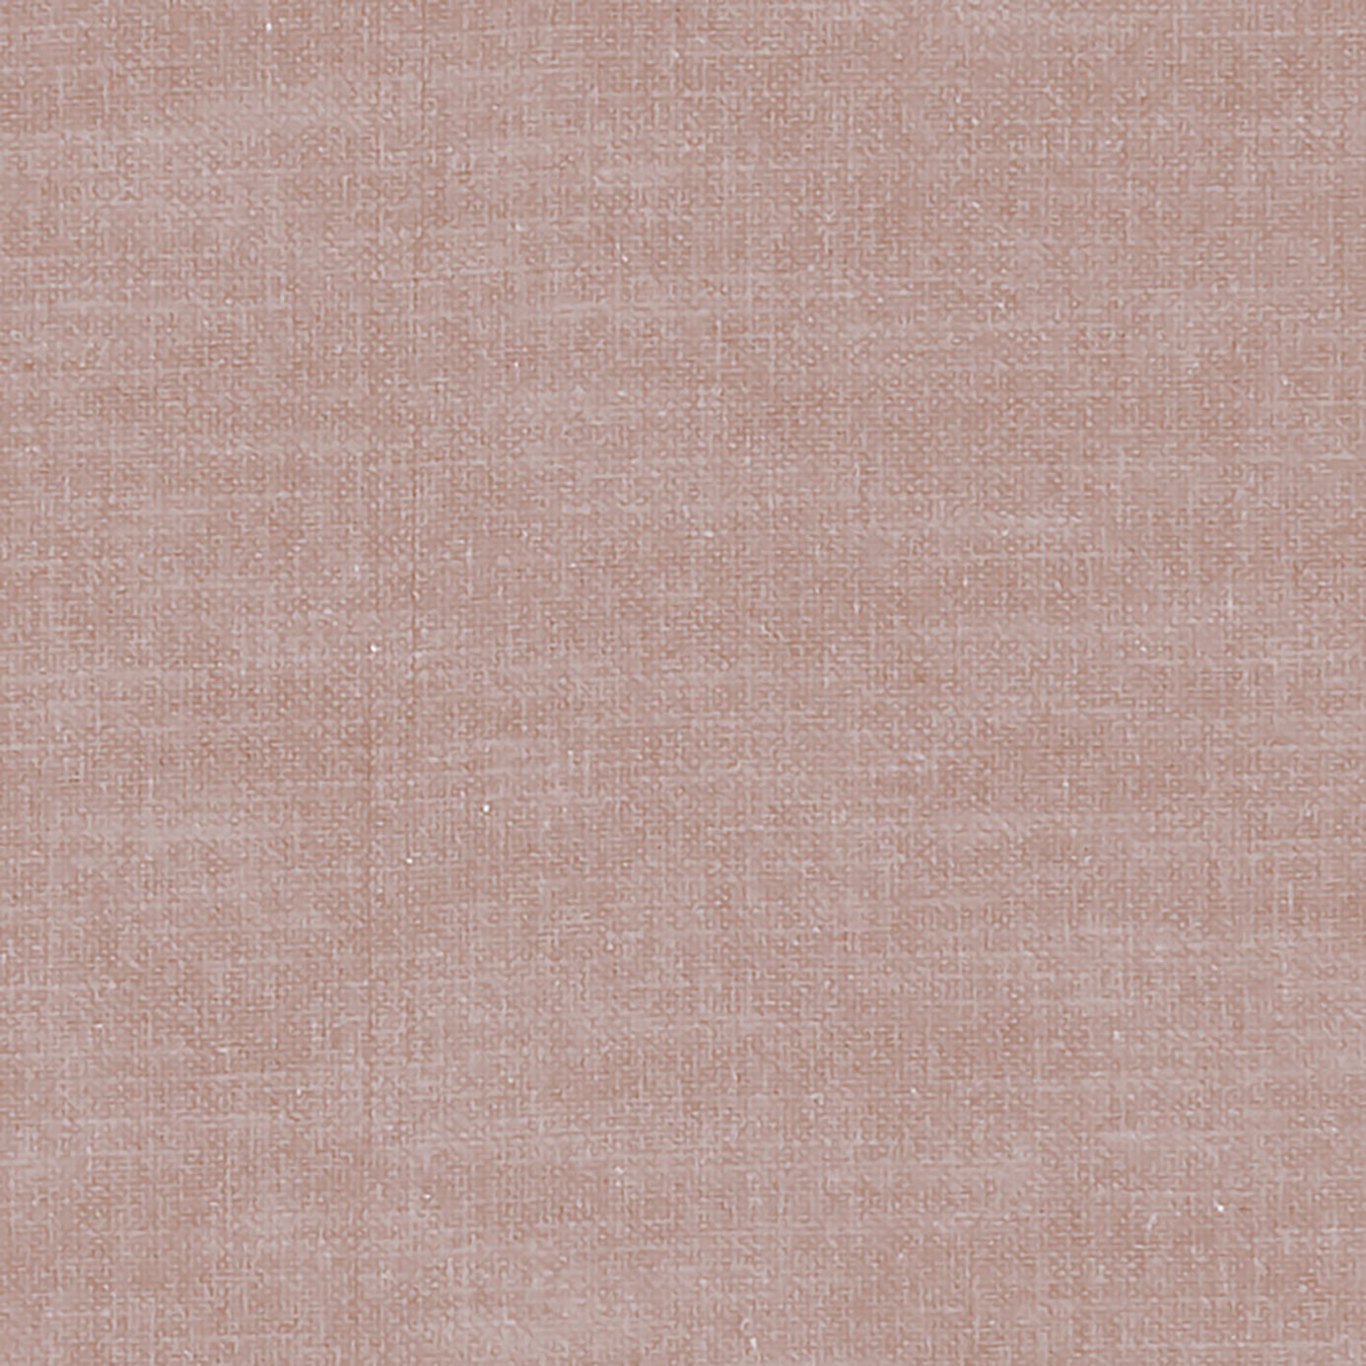 Amalfi Fabric by Clarke & Clarke - F1239/28 - Heather